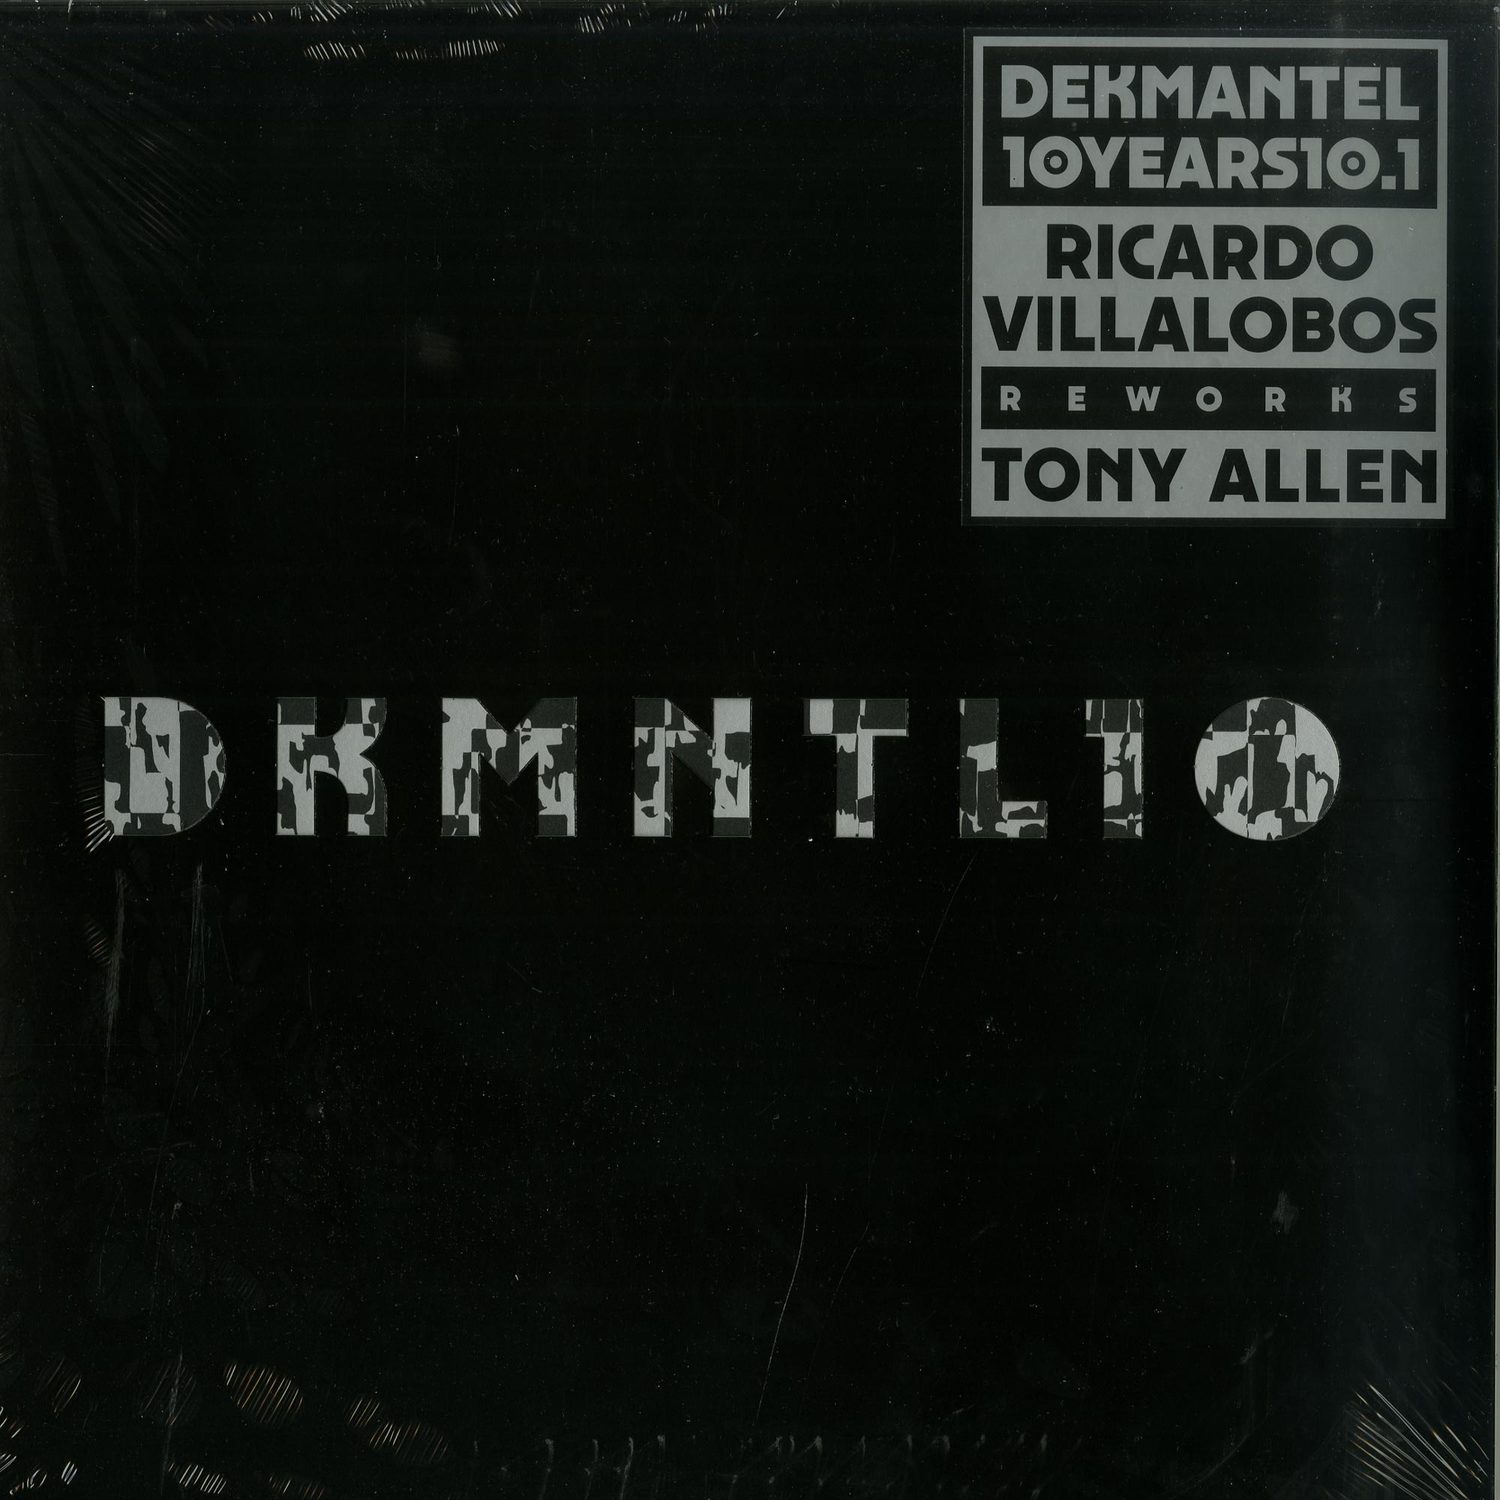 Various Artists  - DEKMANTEL 10 YEARS 10.1